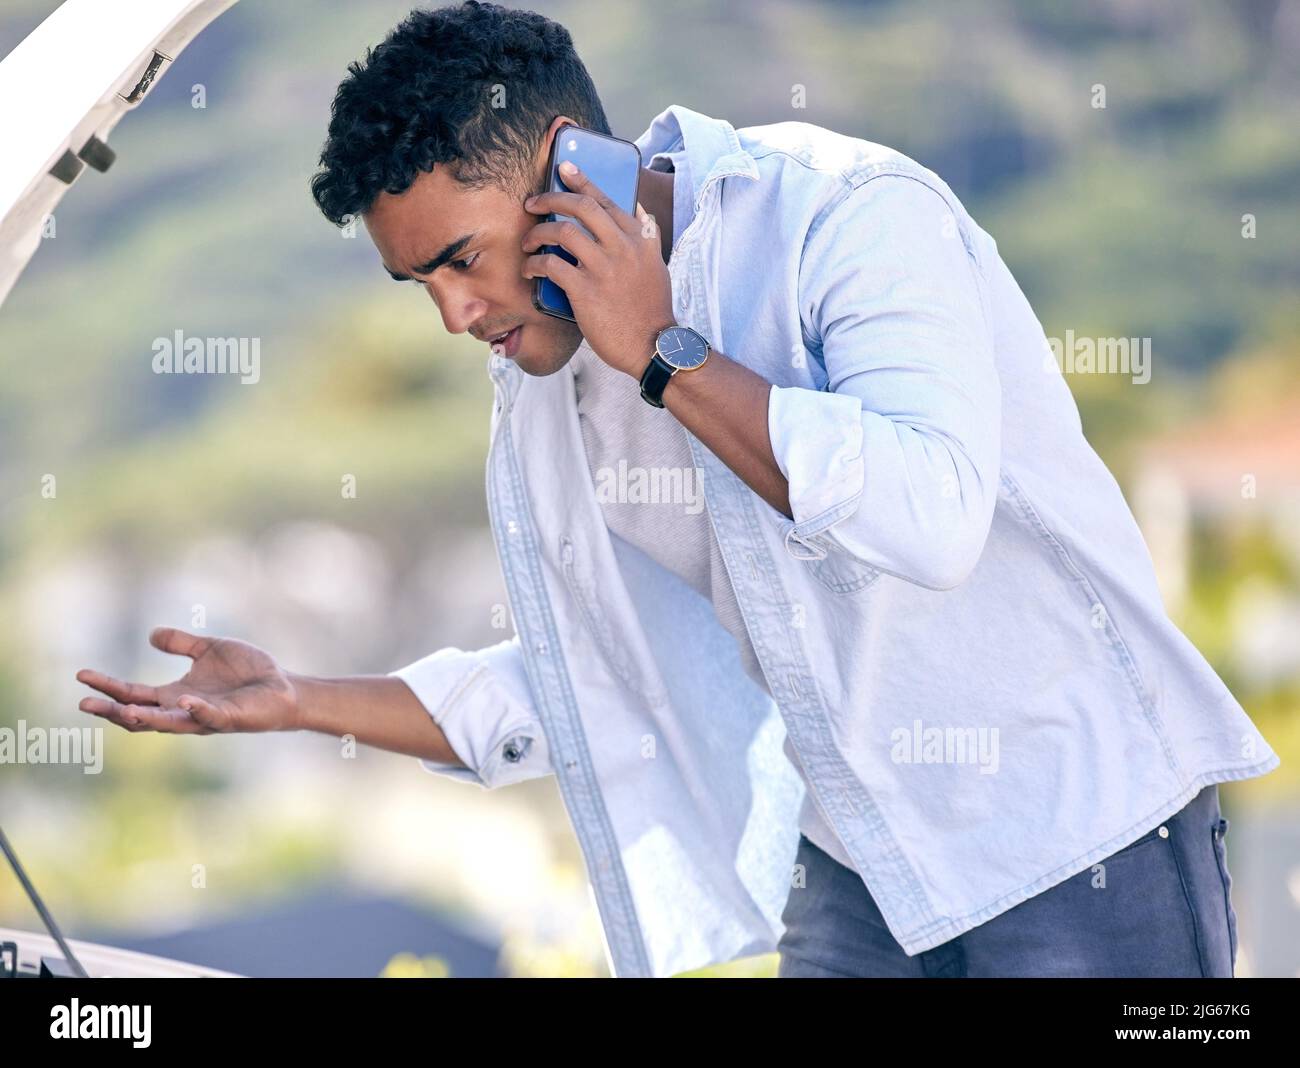 Ich bin so verwirrt Ausgeschnittene Aufnahme eines hübschen jungen Mannes am Telefon mit Pannenhilfe nach einem Fahrzeugausfall. Stockfoto